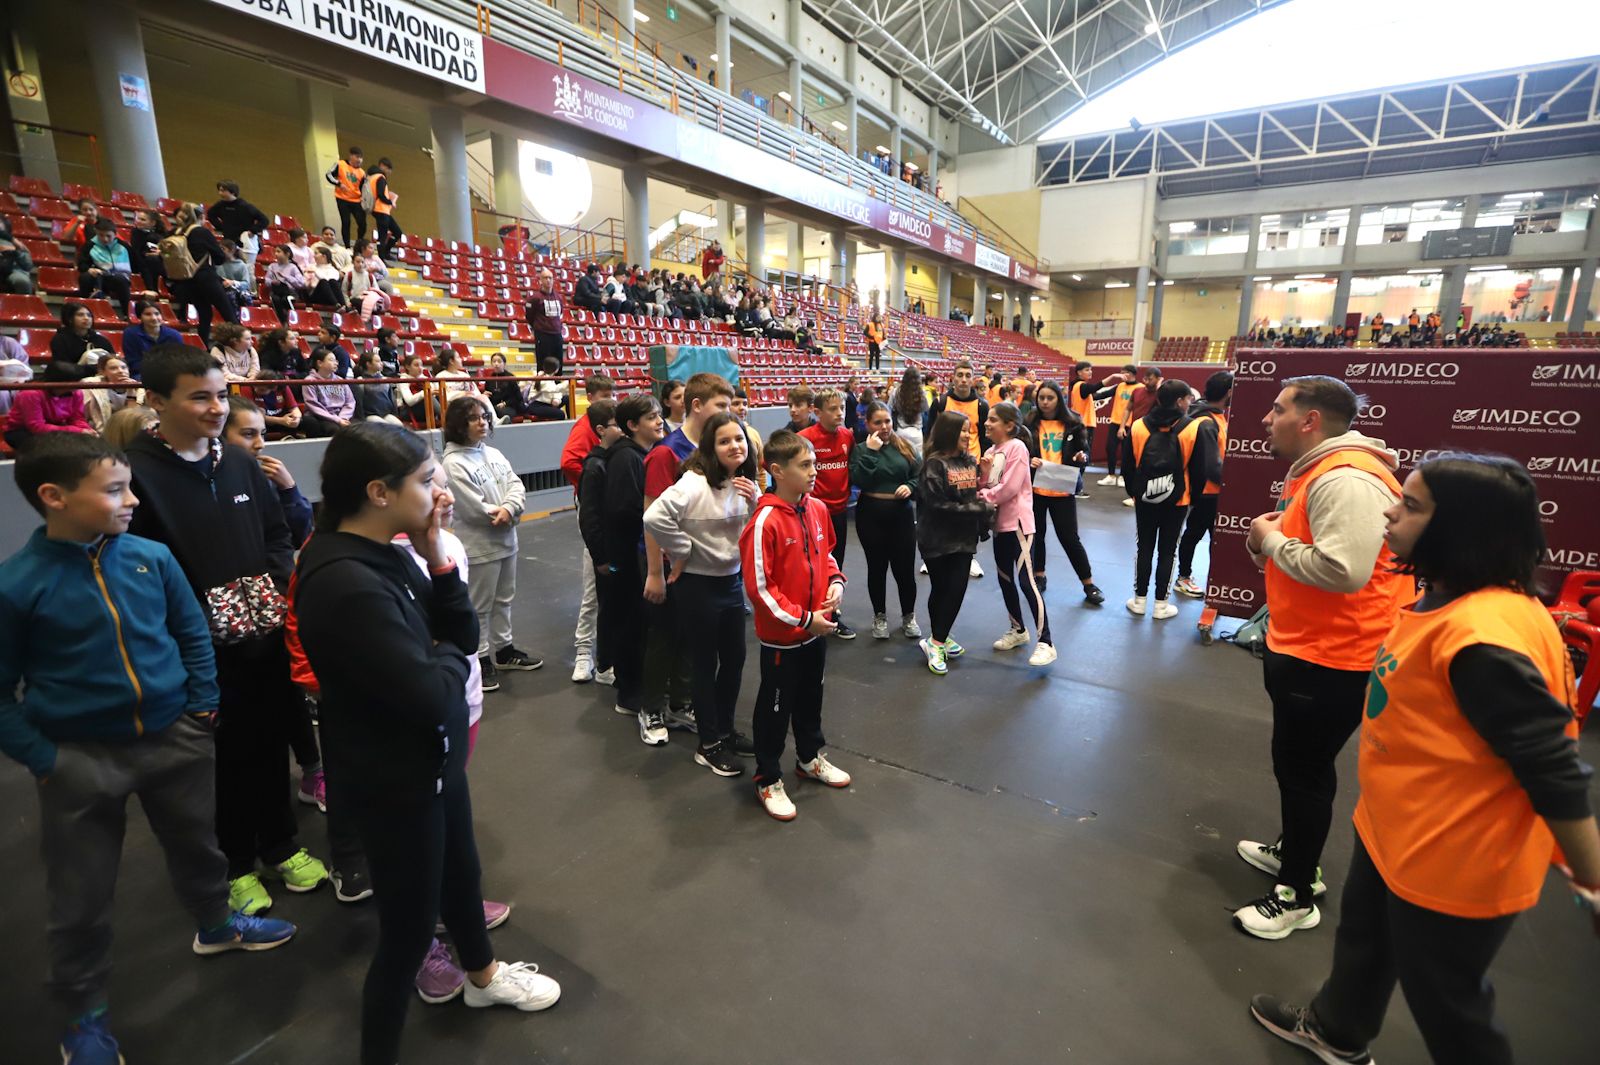 El palacio municipal de deportes Vista Alegre acoge una nueva edición de la Gimnastrada